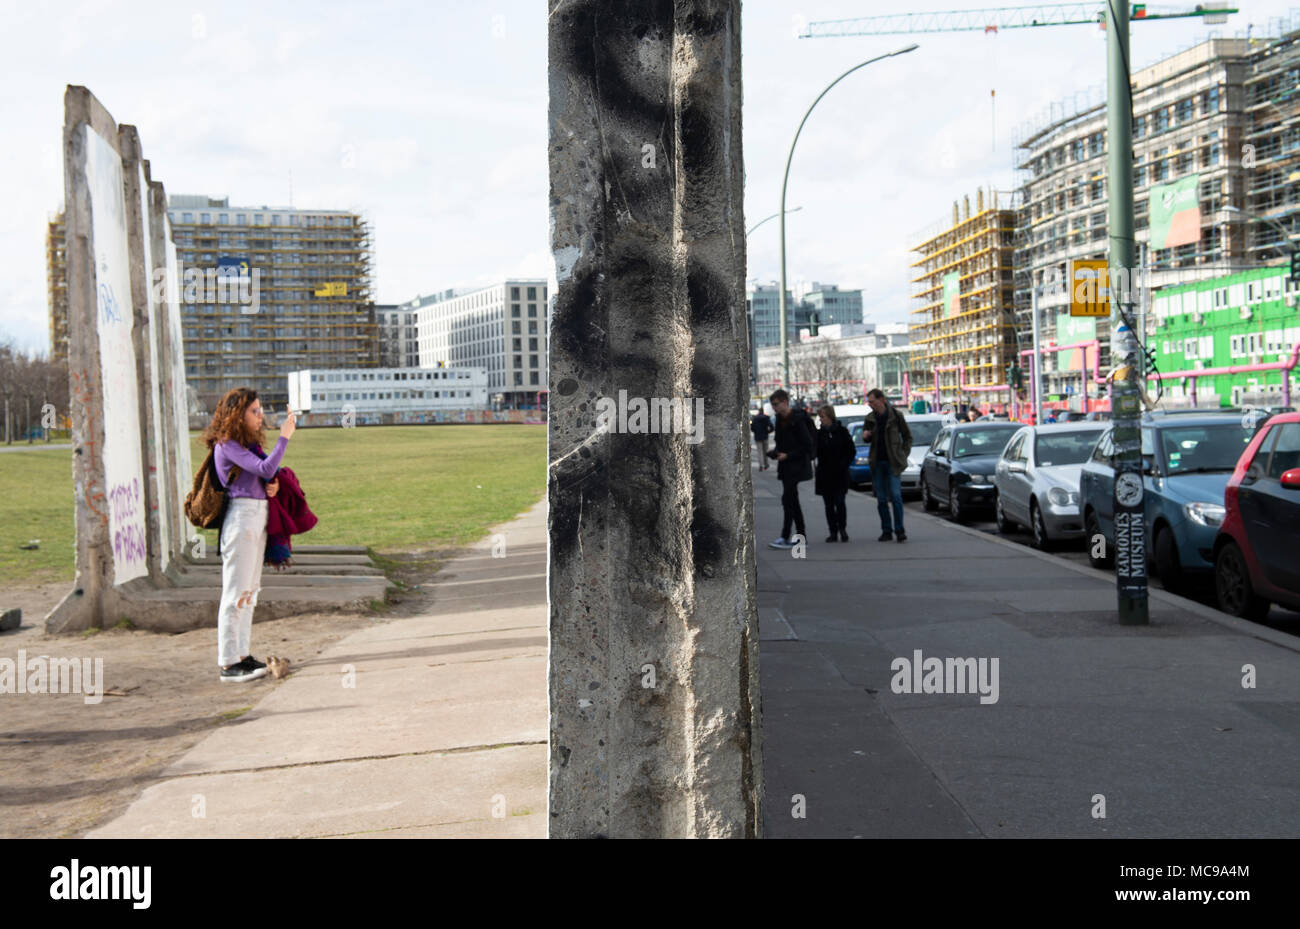 A Famosa Defesa De Berlim Ou Muro De Berlim Em Xadrez é Uma Das Defesas  Mais Estáveis Do Jogo Espanhol Foto de Stock - Imagem de inteligente,  batalha: 210114538